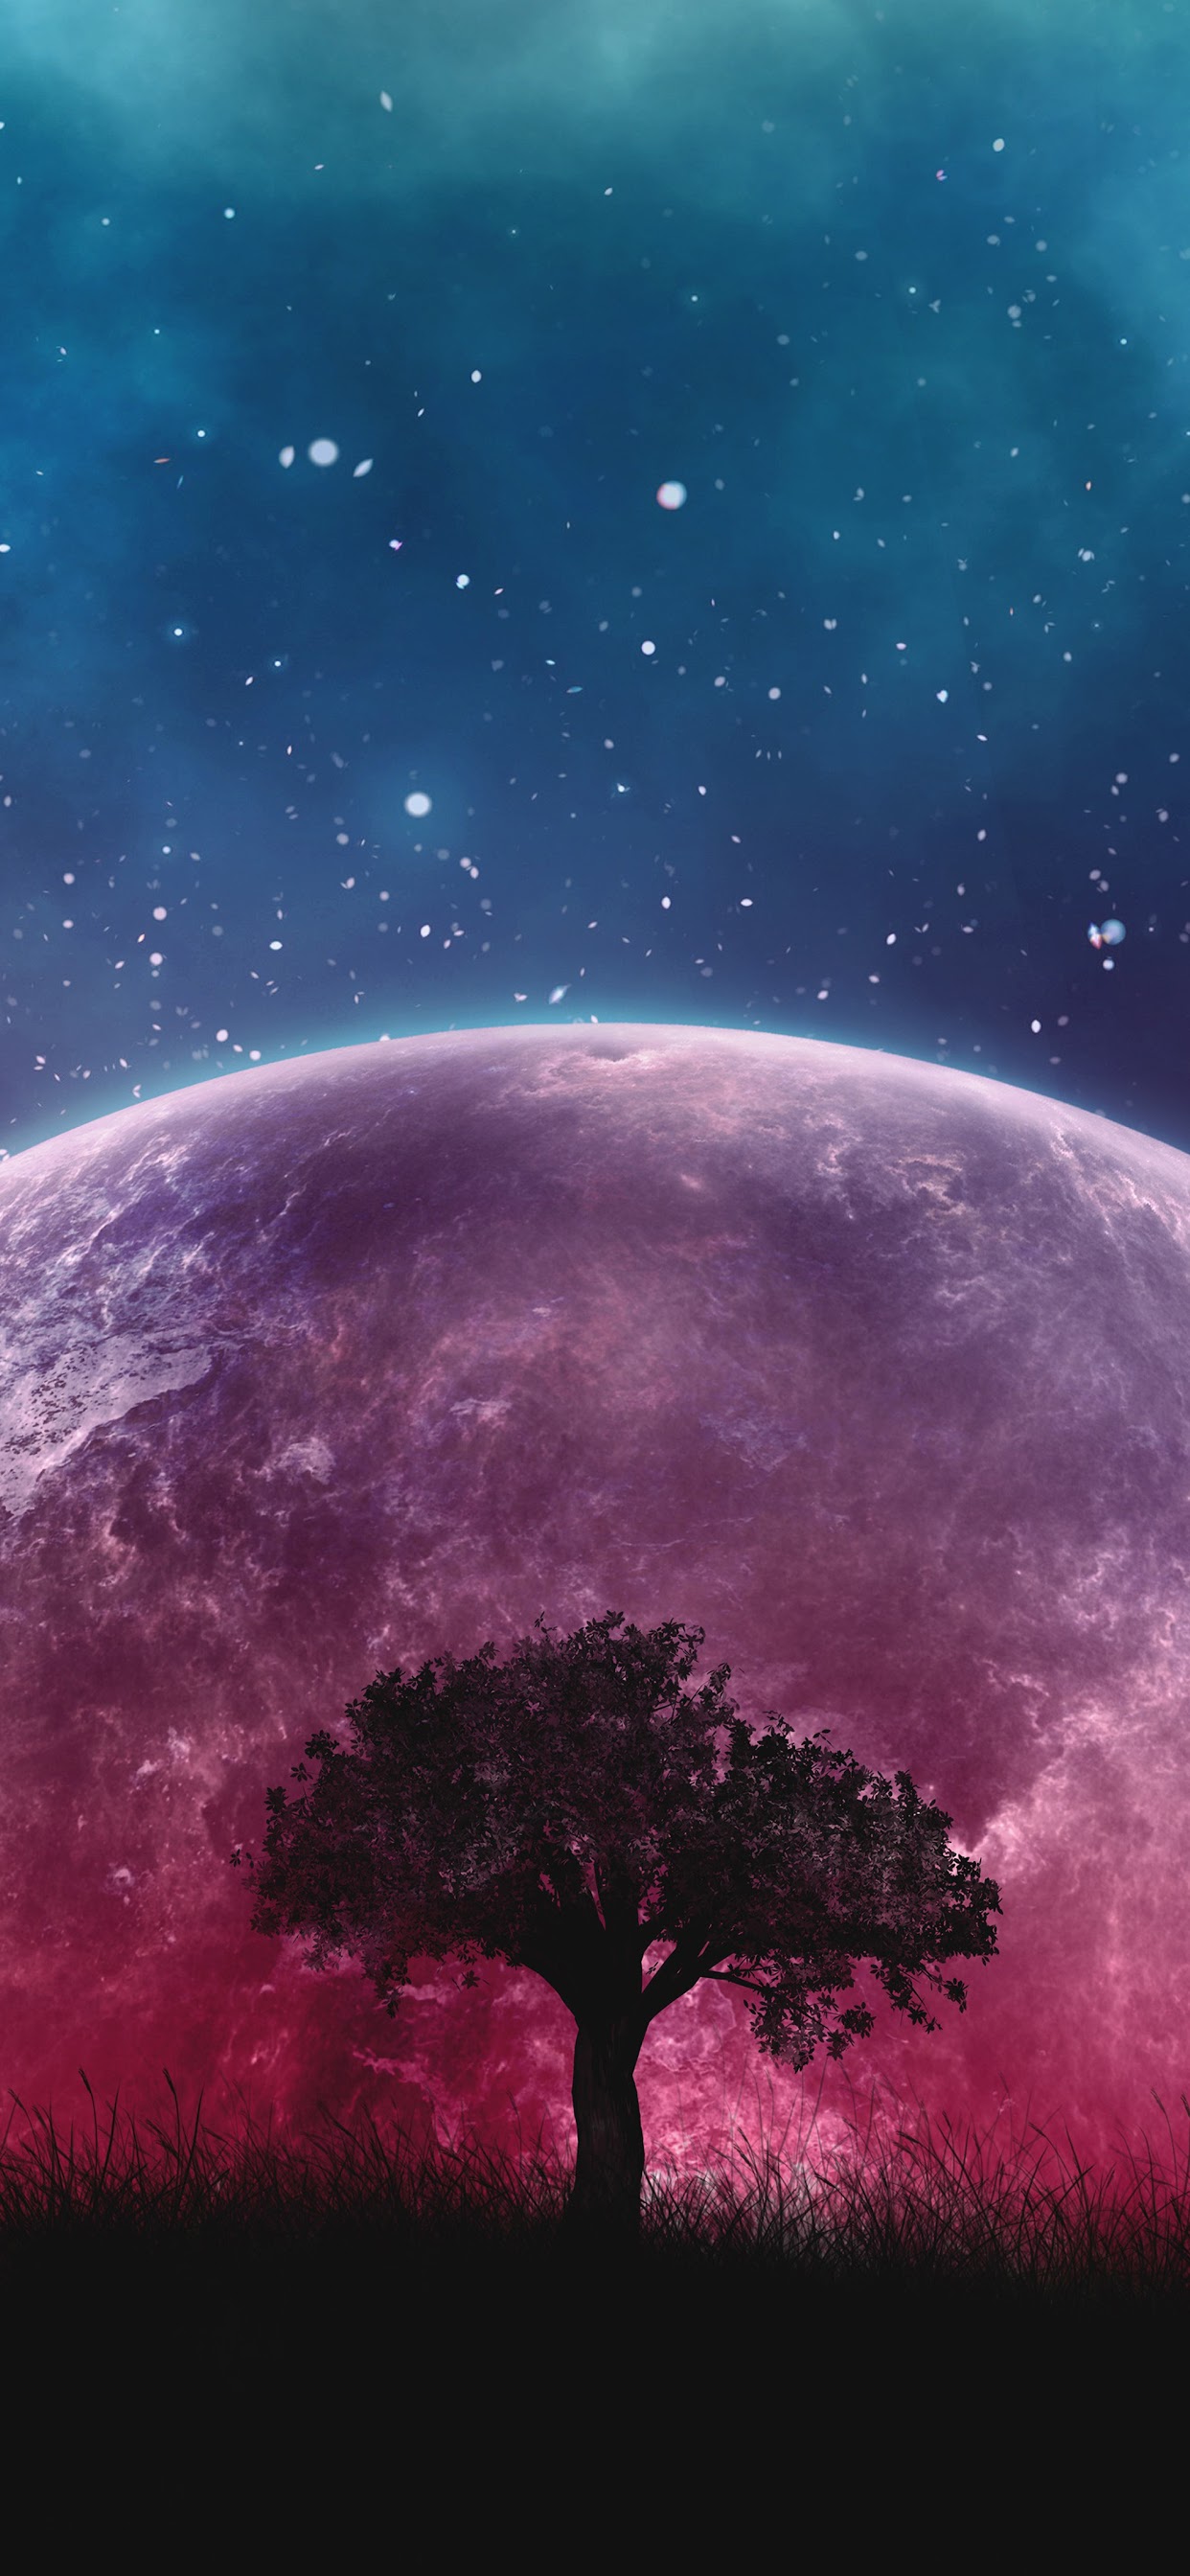 Moon, Night, Sky, Stars, Landscape, Scenery, 8k, - Galaxy Wallpaper For Ipad , HD Wallpaper & Backgrounds